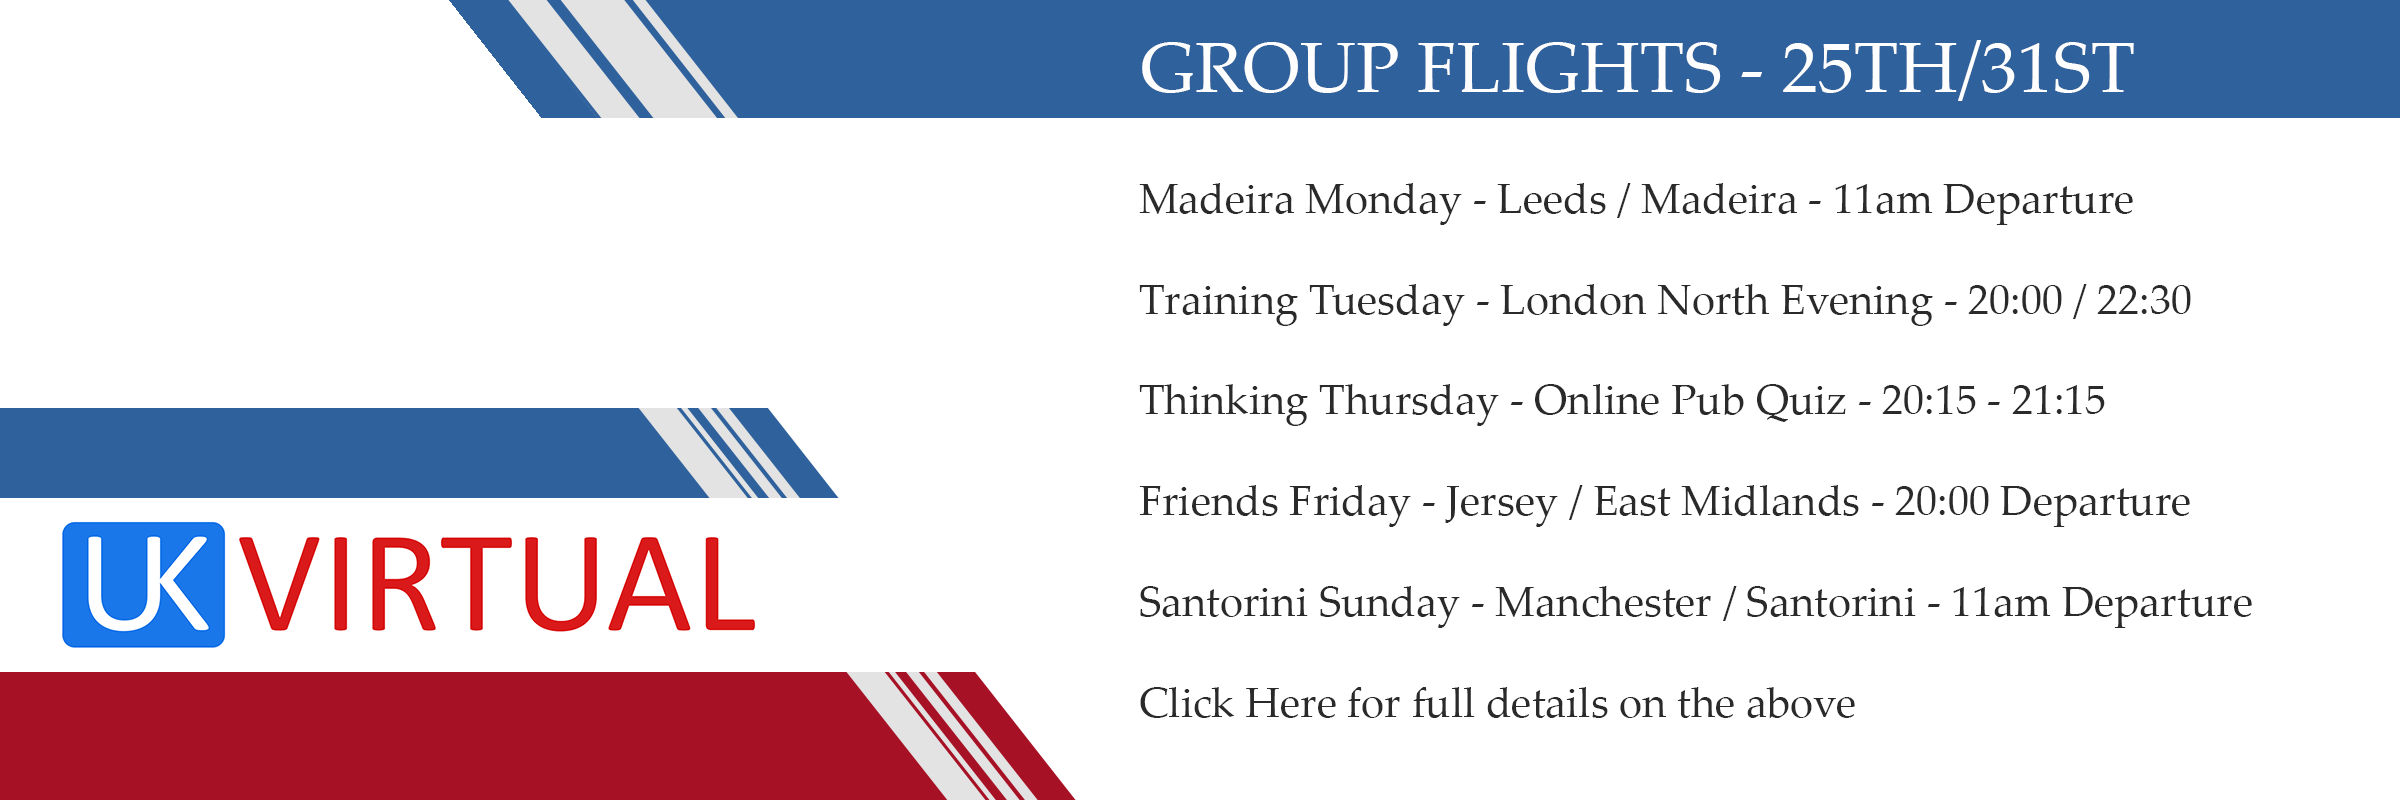 Group flights – 25th/31st May 2020